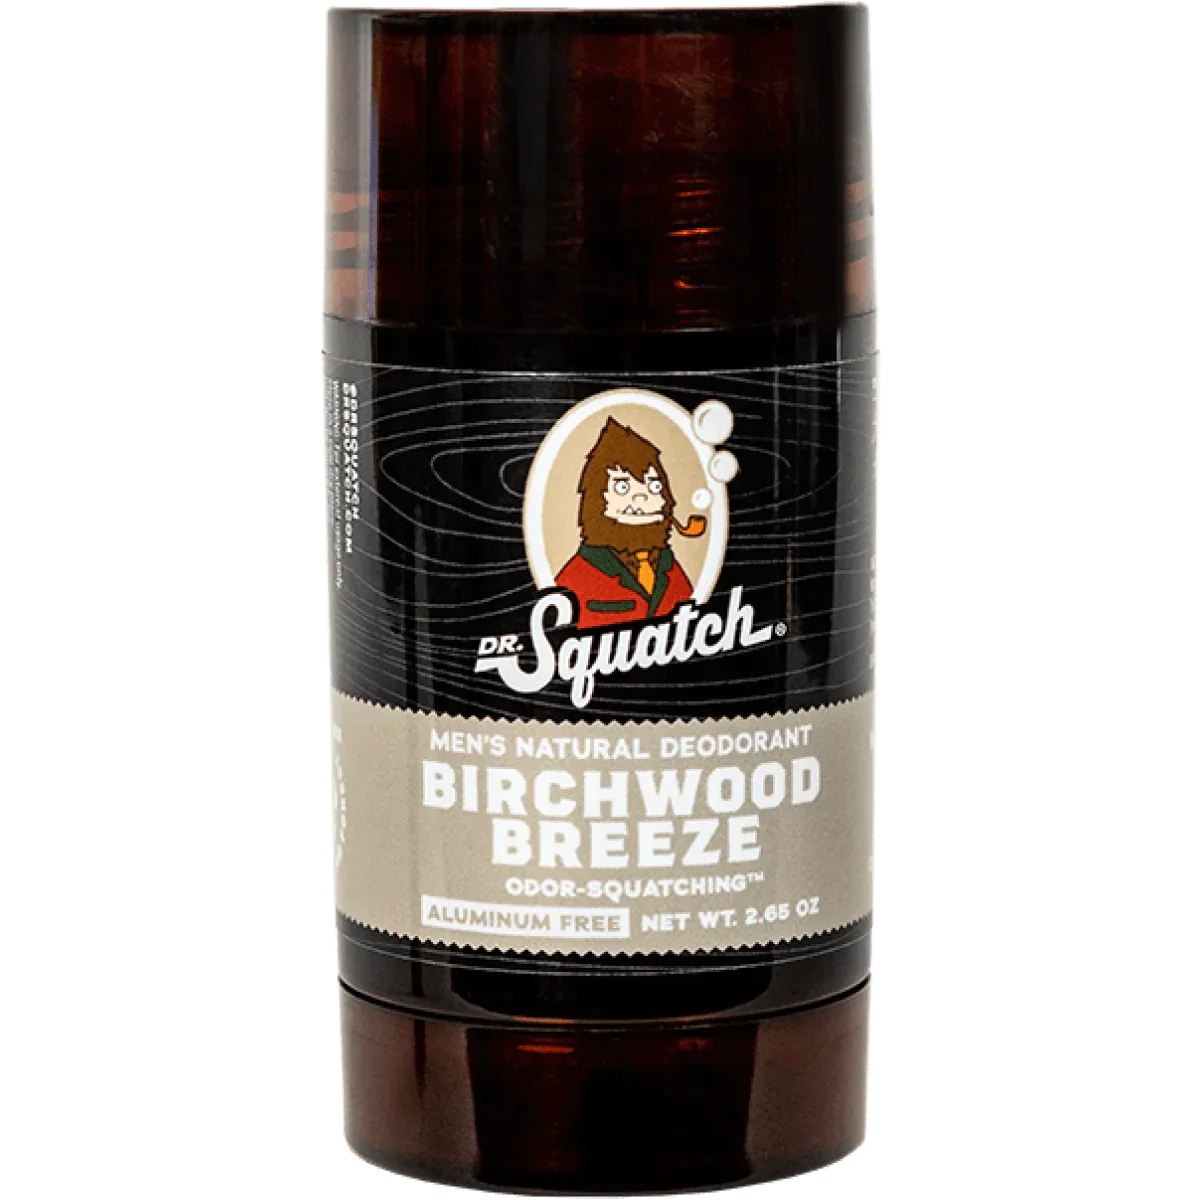 Birchwood Breeze┃deodorant┃dr.squatch - Deodorant